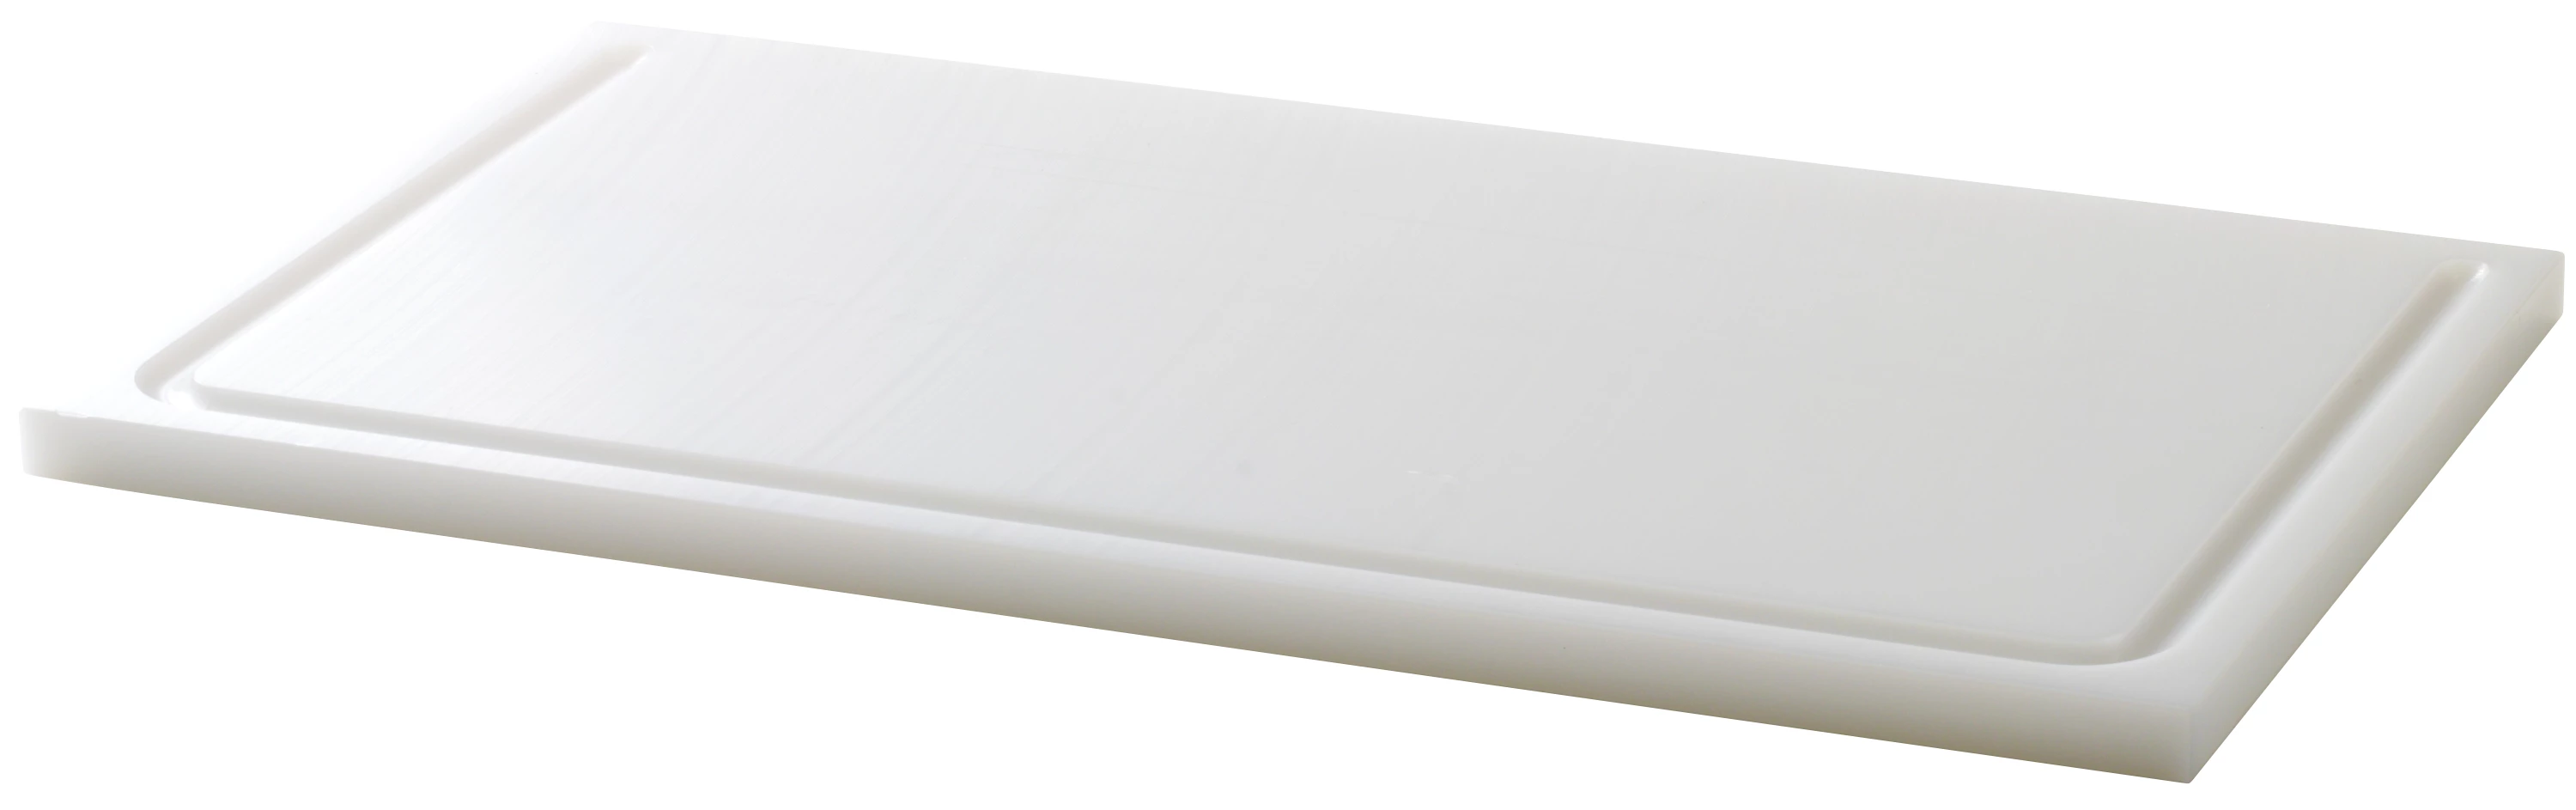 Euroboard skæreplanke, hvid, 45 x 25 x 1,5 cm